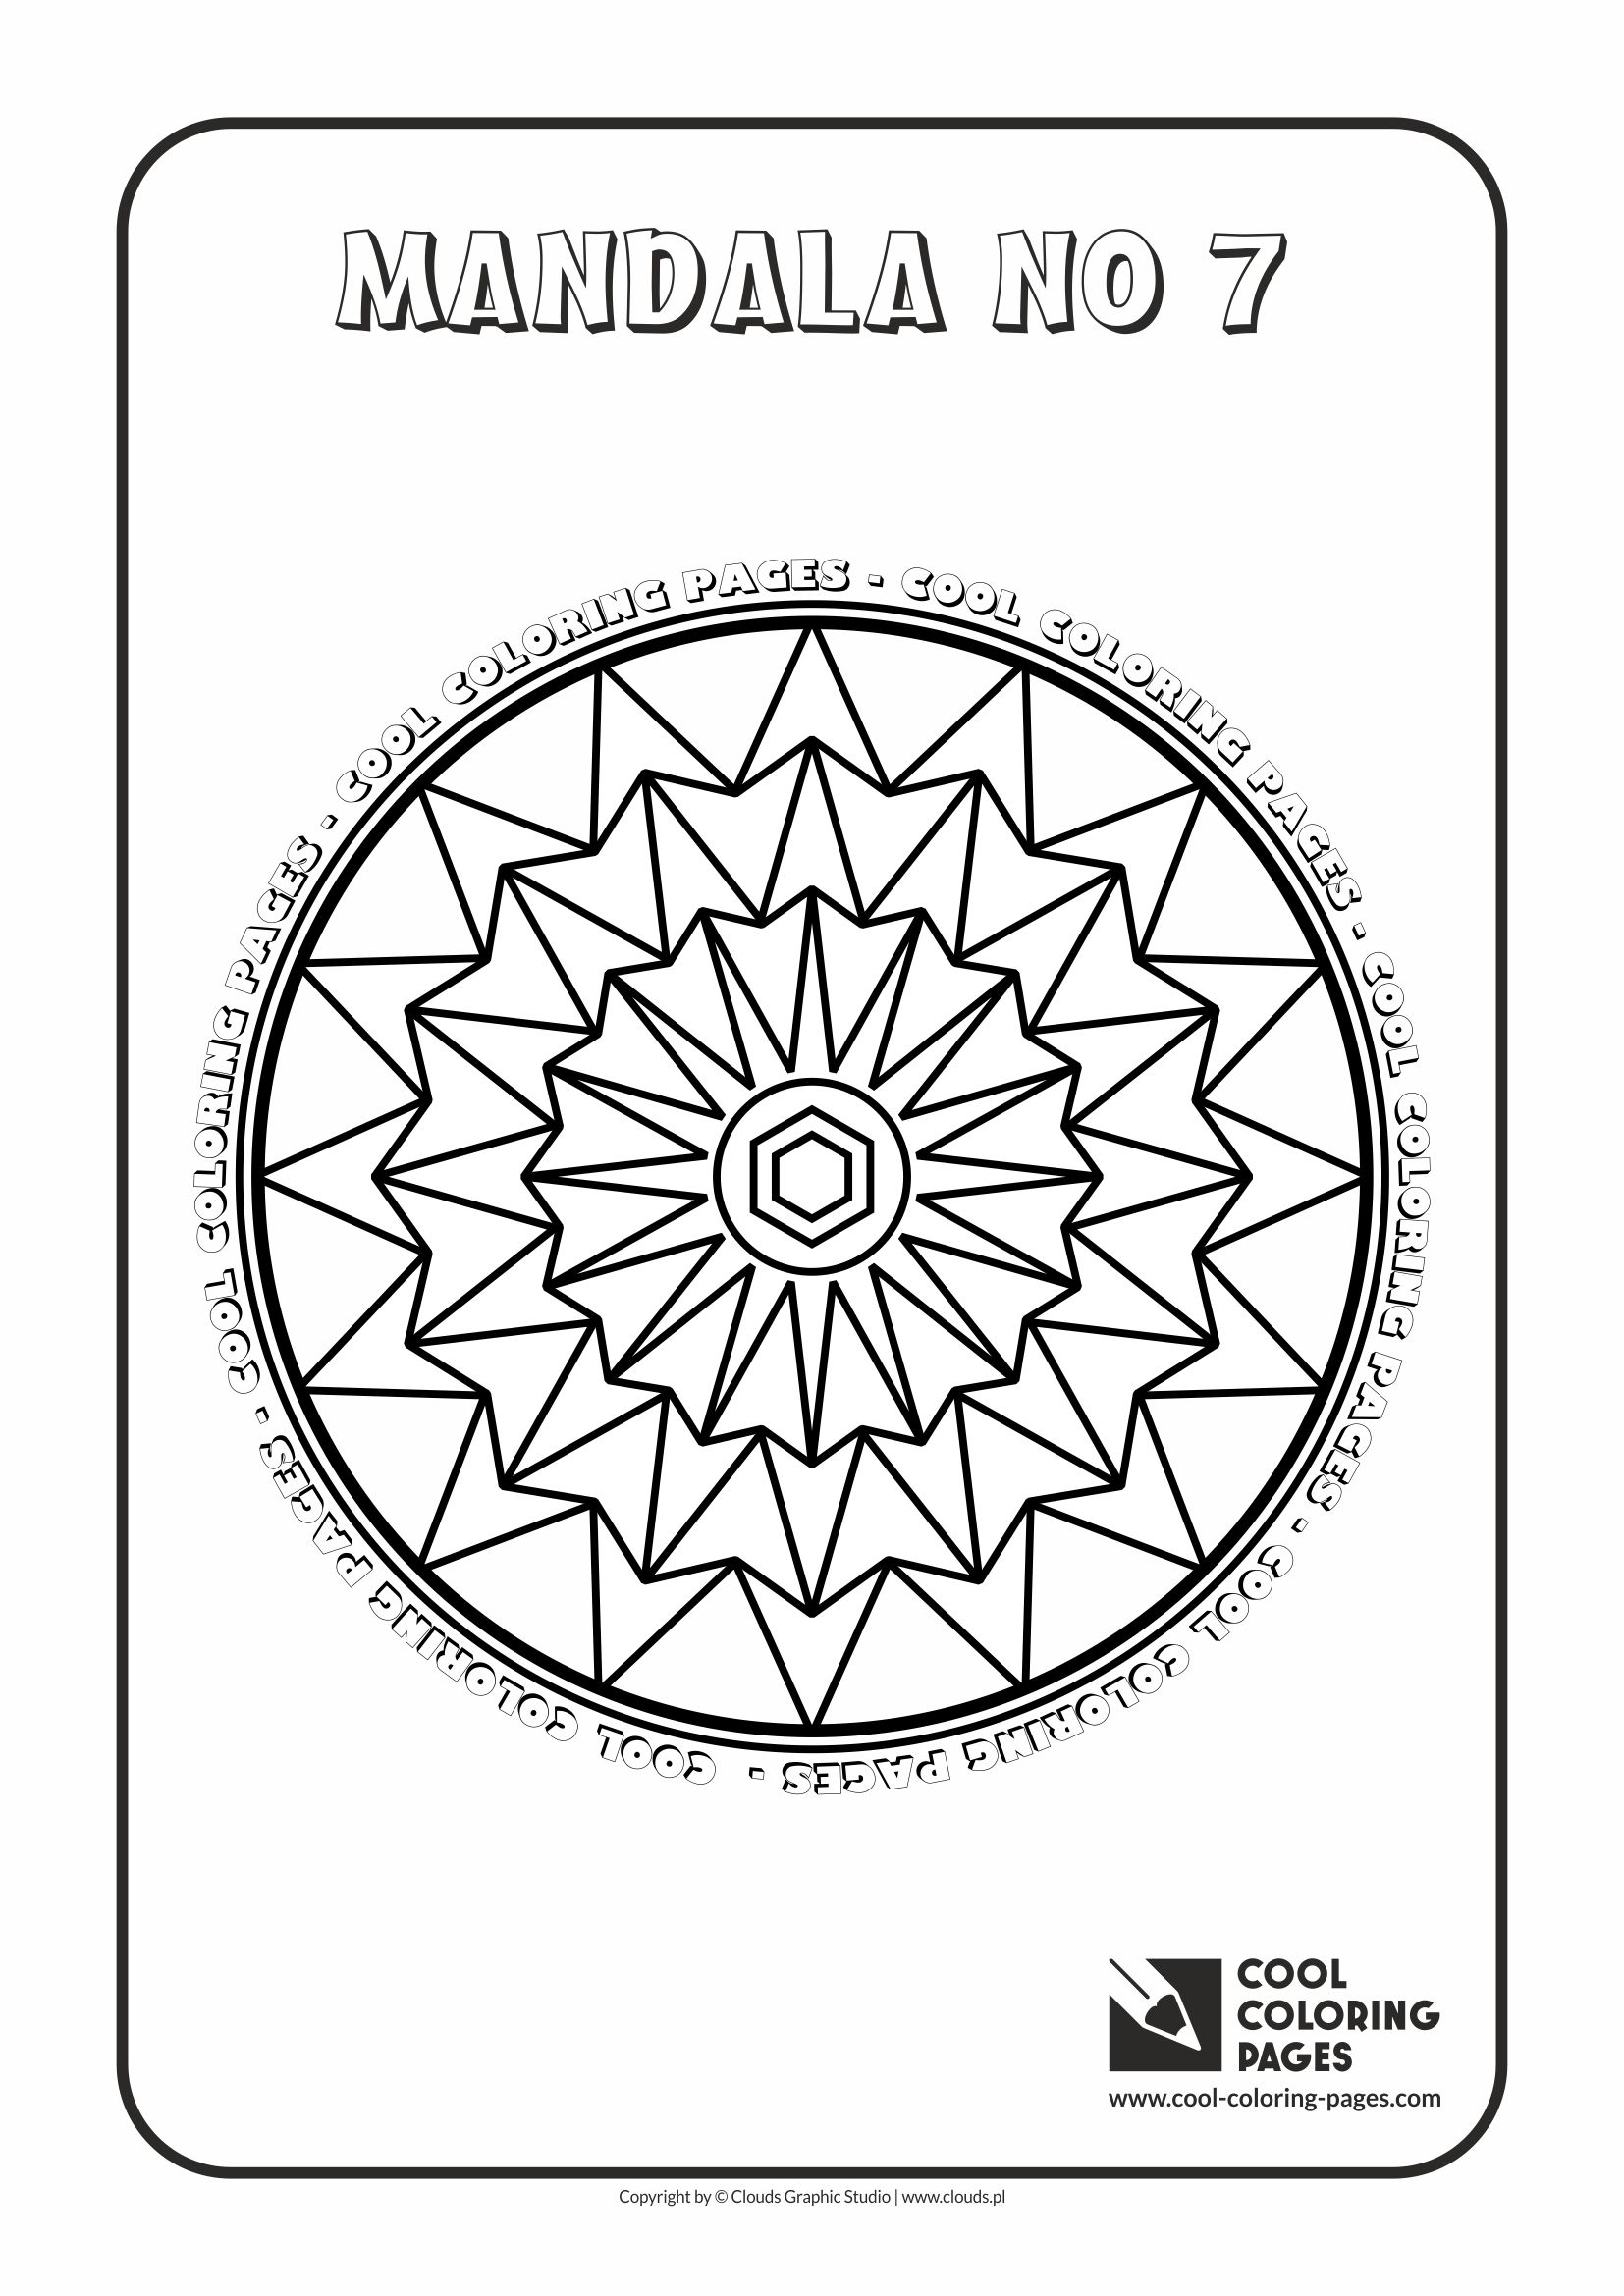 Cool Coloring Pages - Mandalas / Mandala no 7